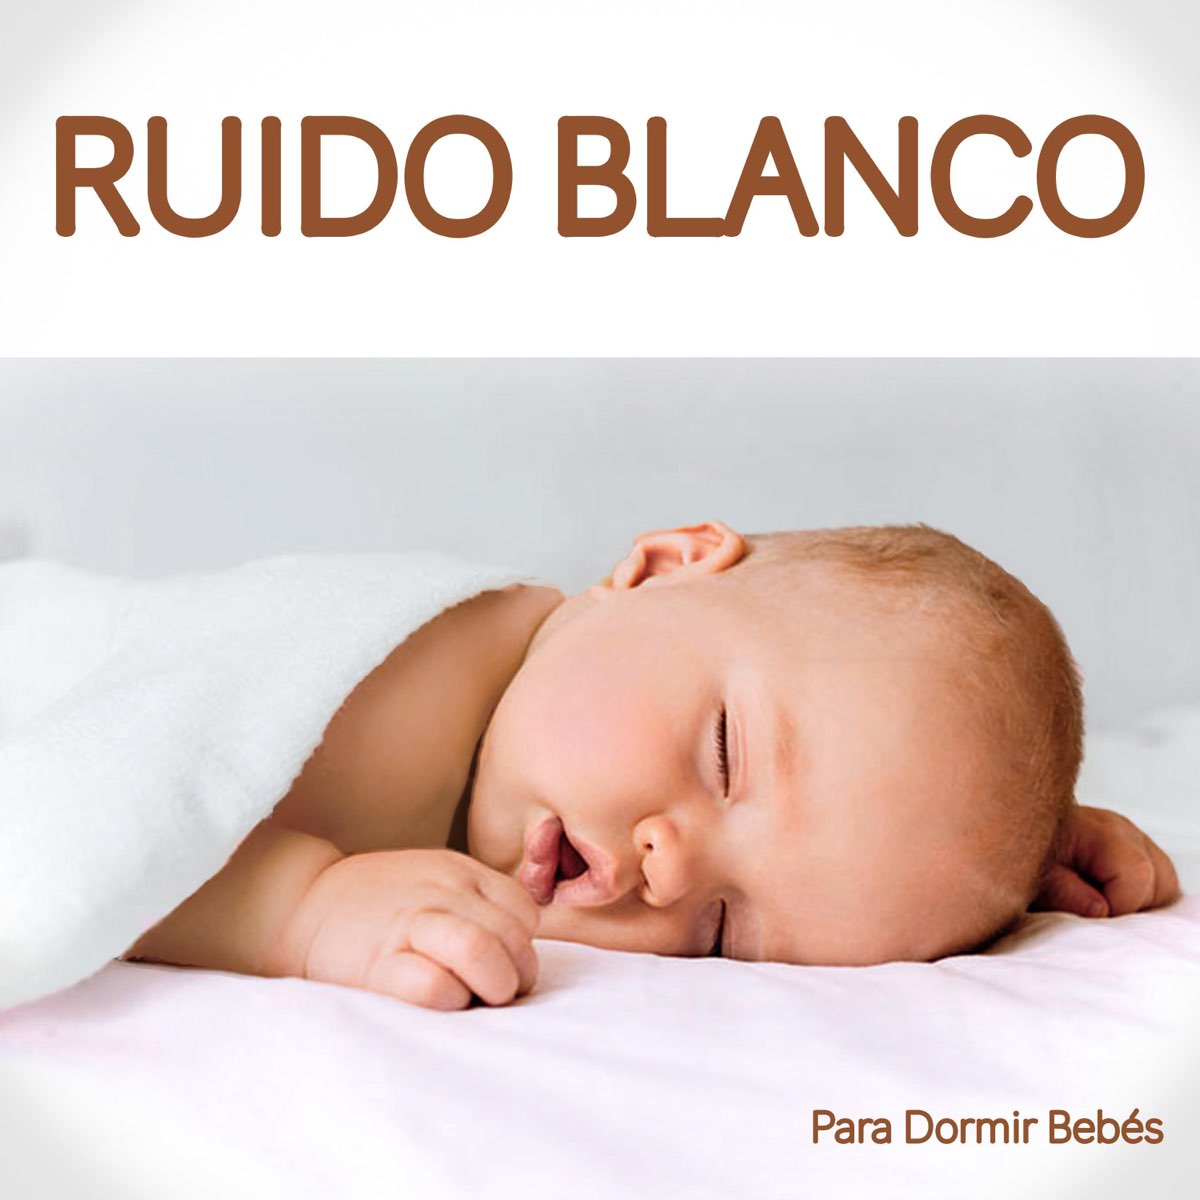 Ruido Blanco Para Dormir Bebés par Dormir Bebé, Música Dormir & Ruido Blanco  Dormir sur Apple Music